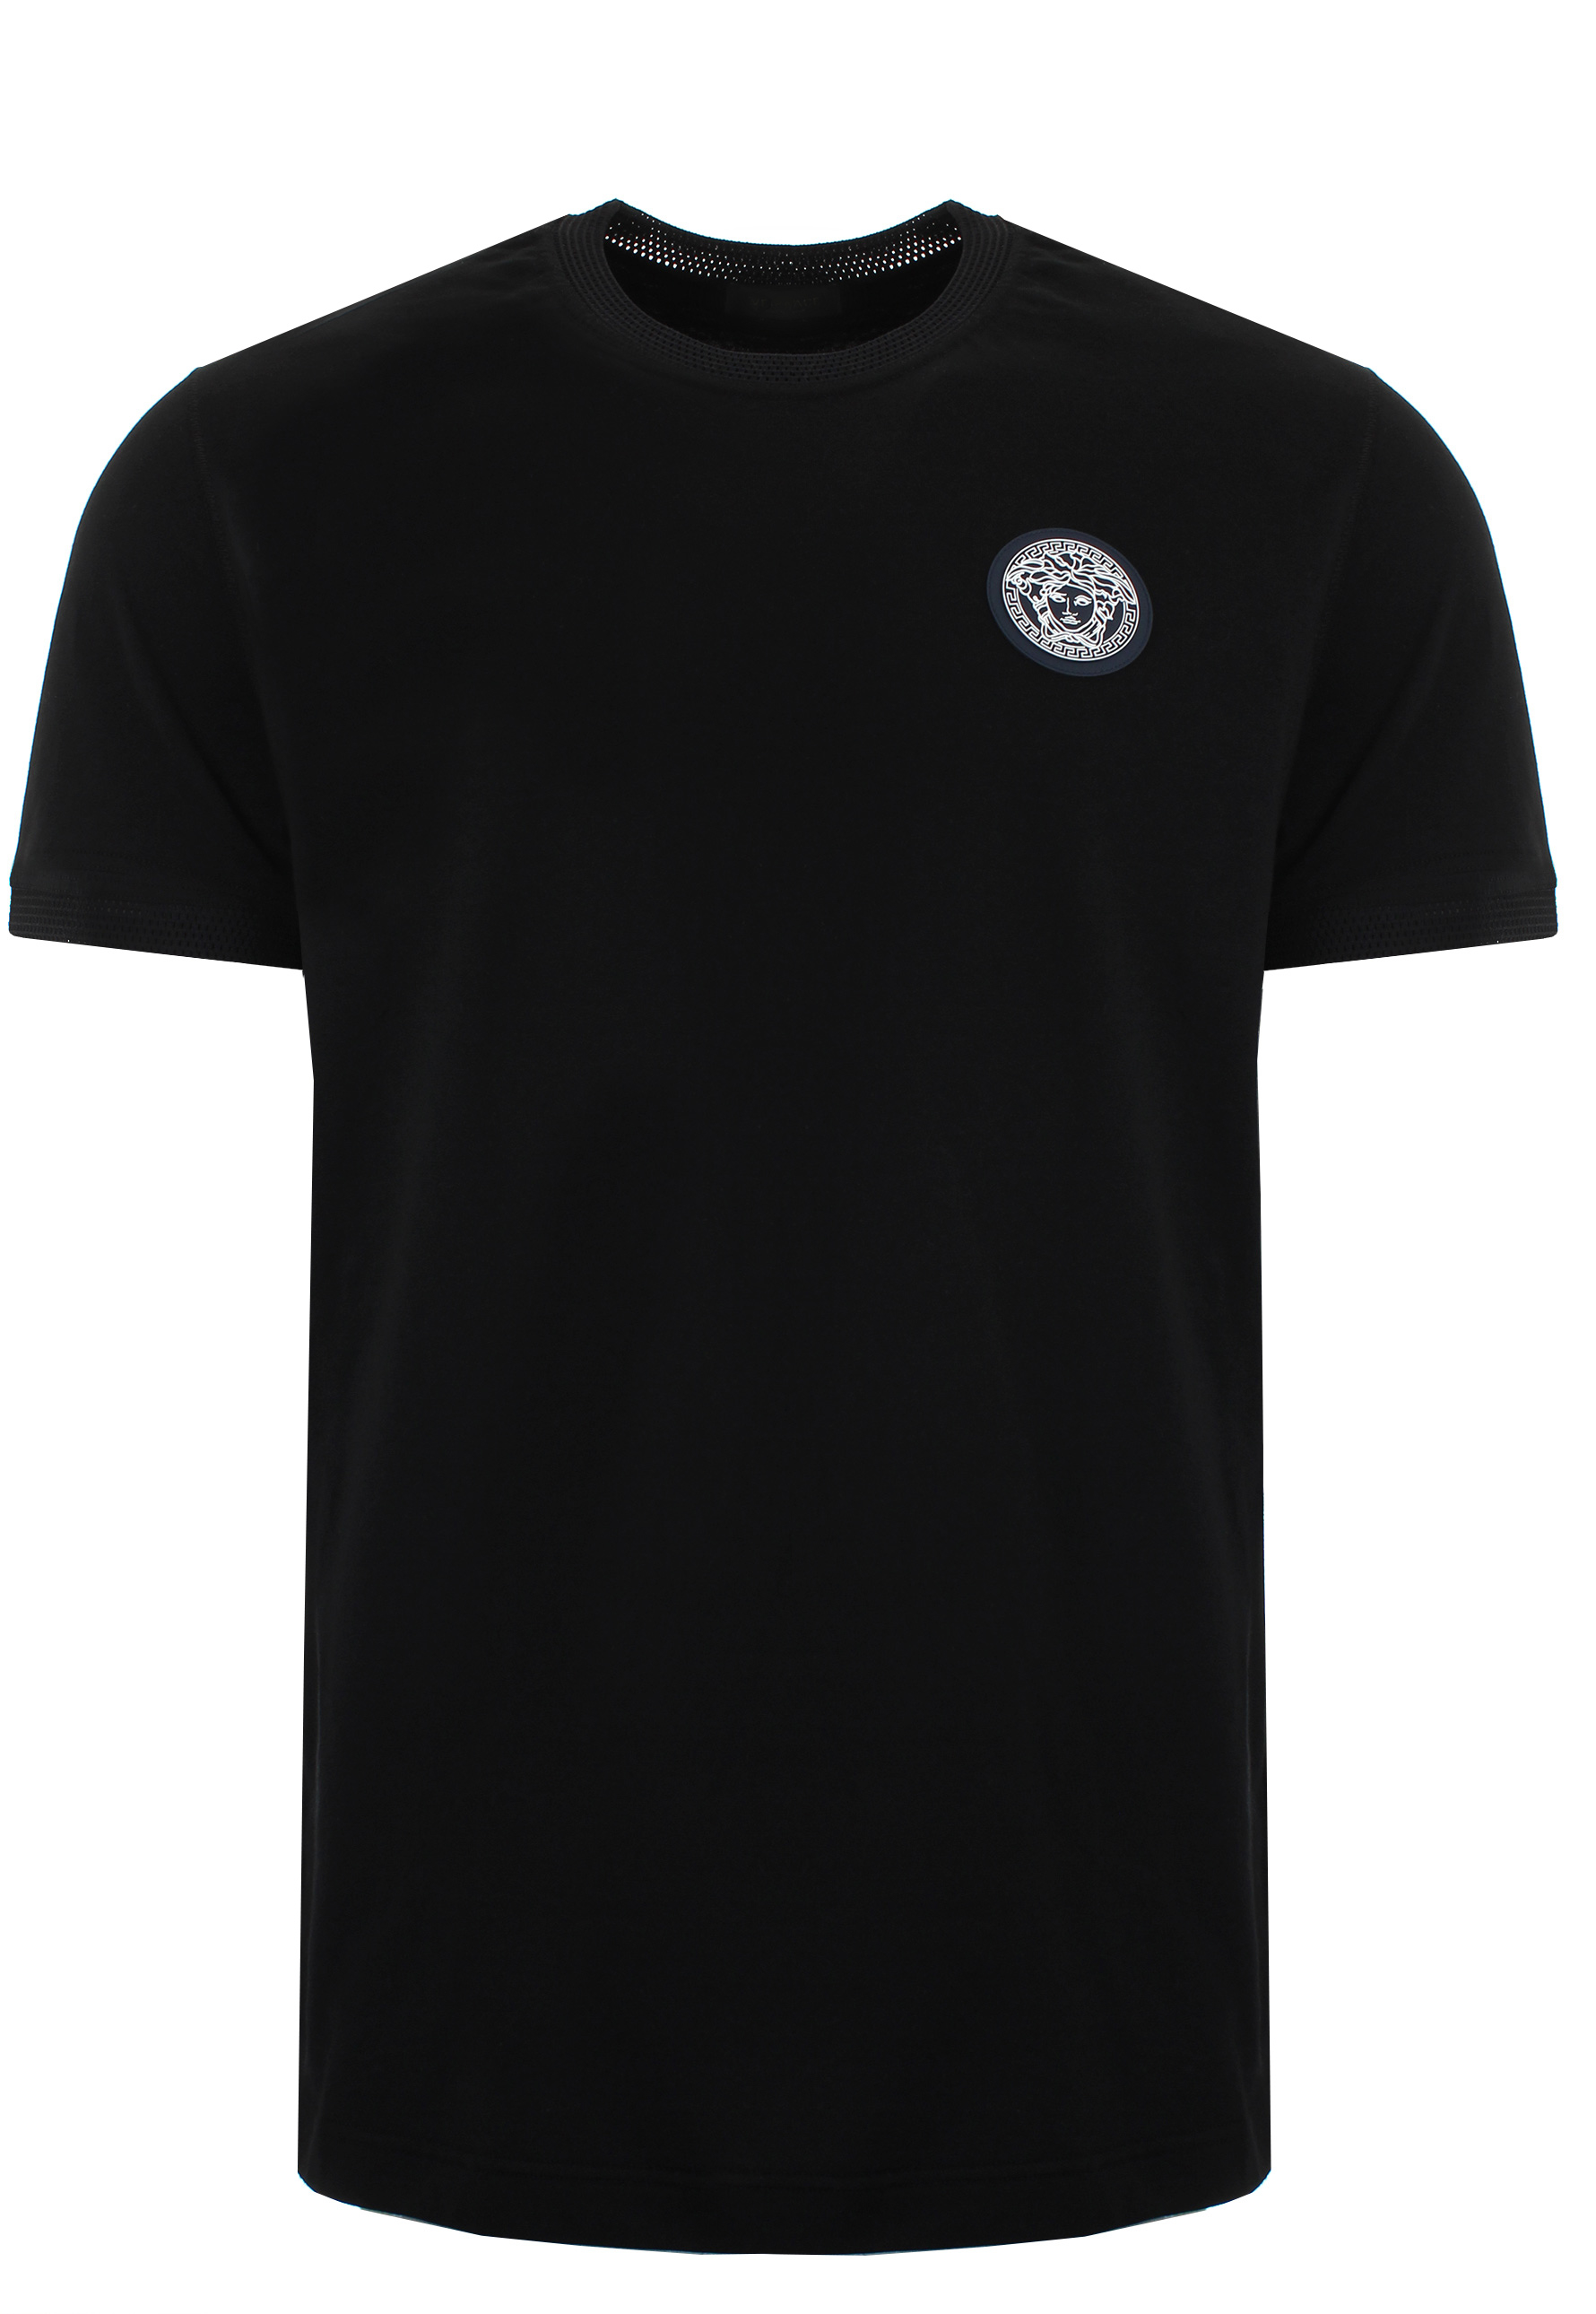 Lyst - Versace Medusa Sports T-shirt Black in Black for Men